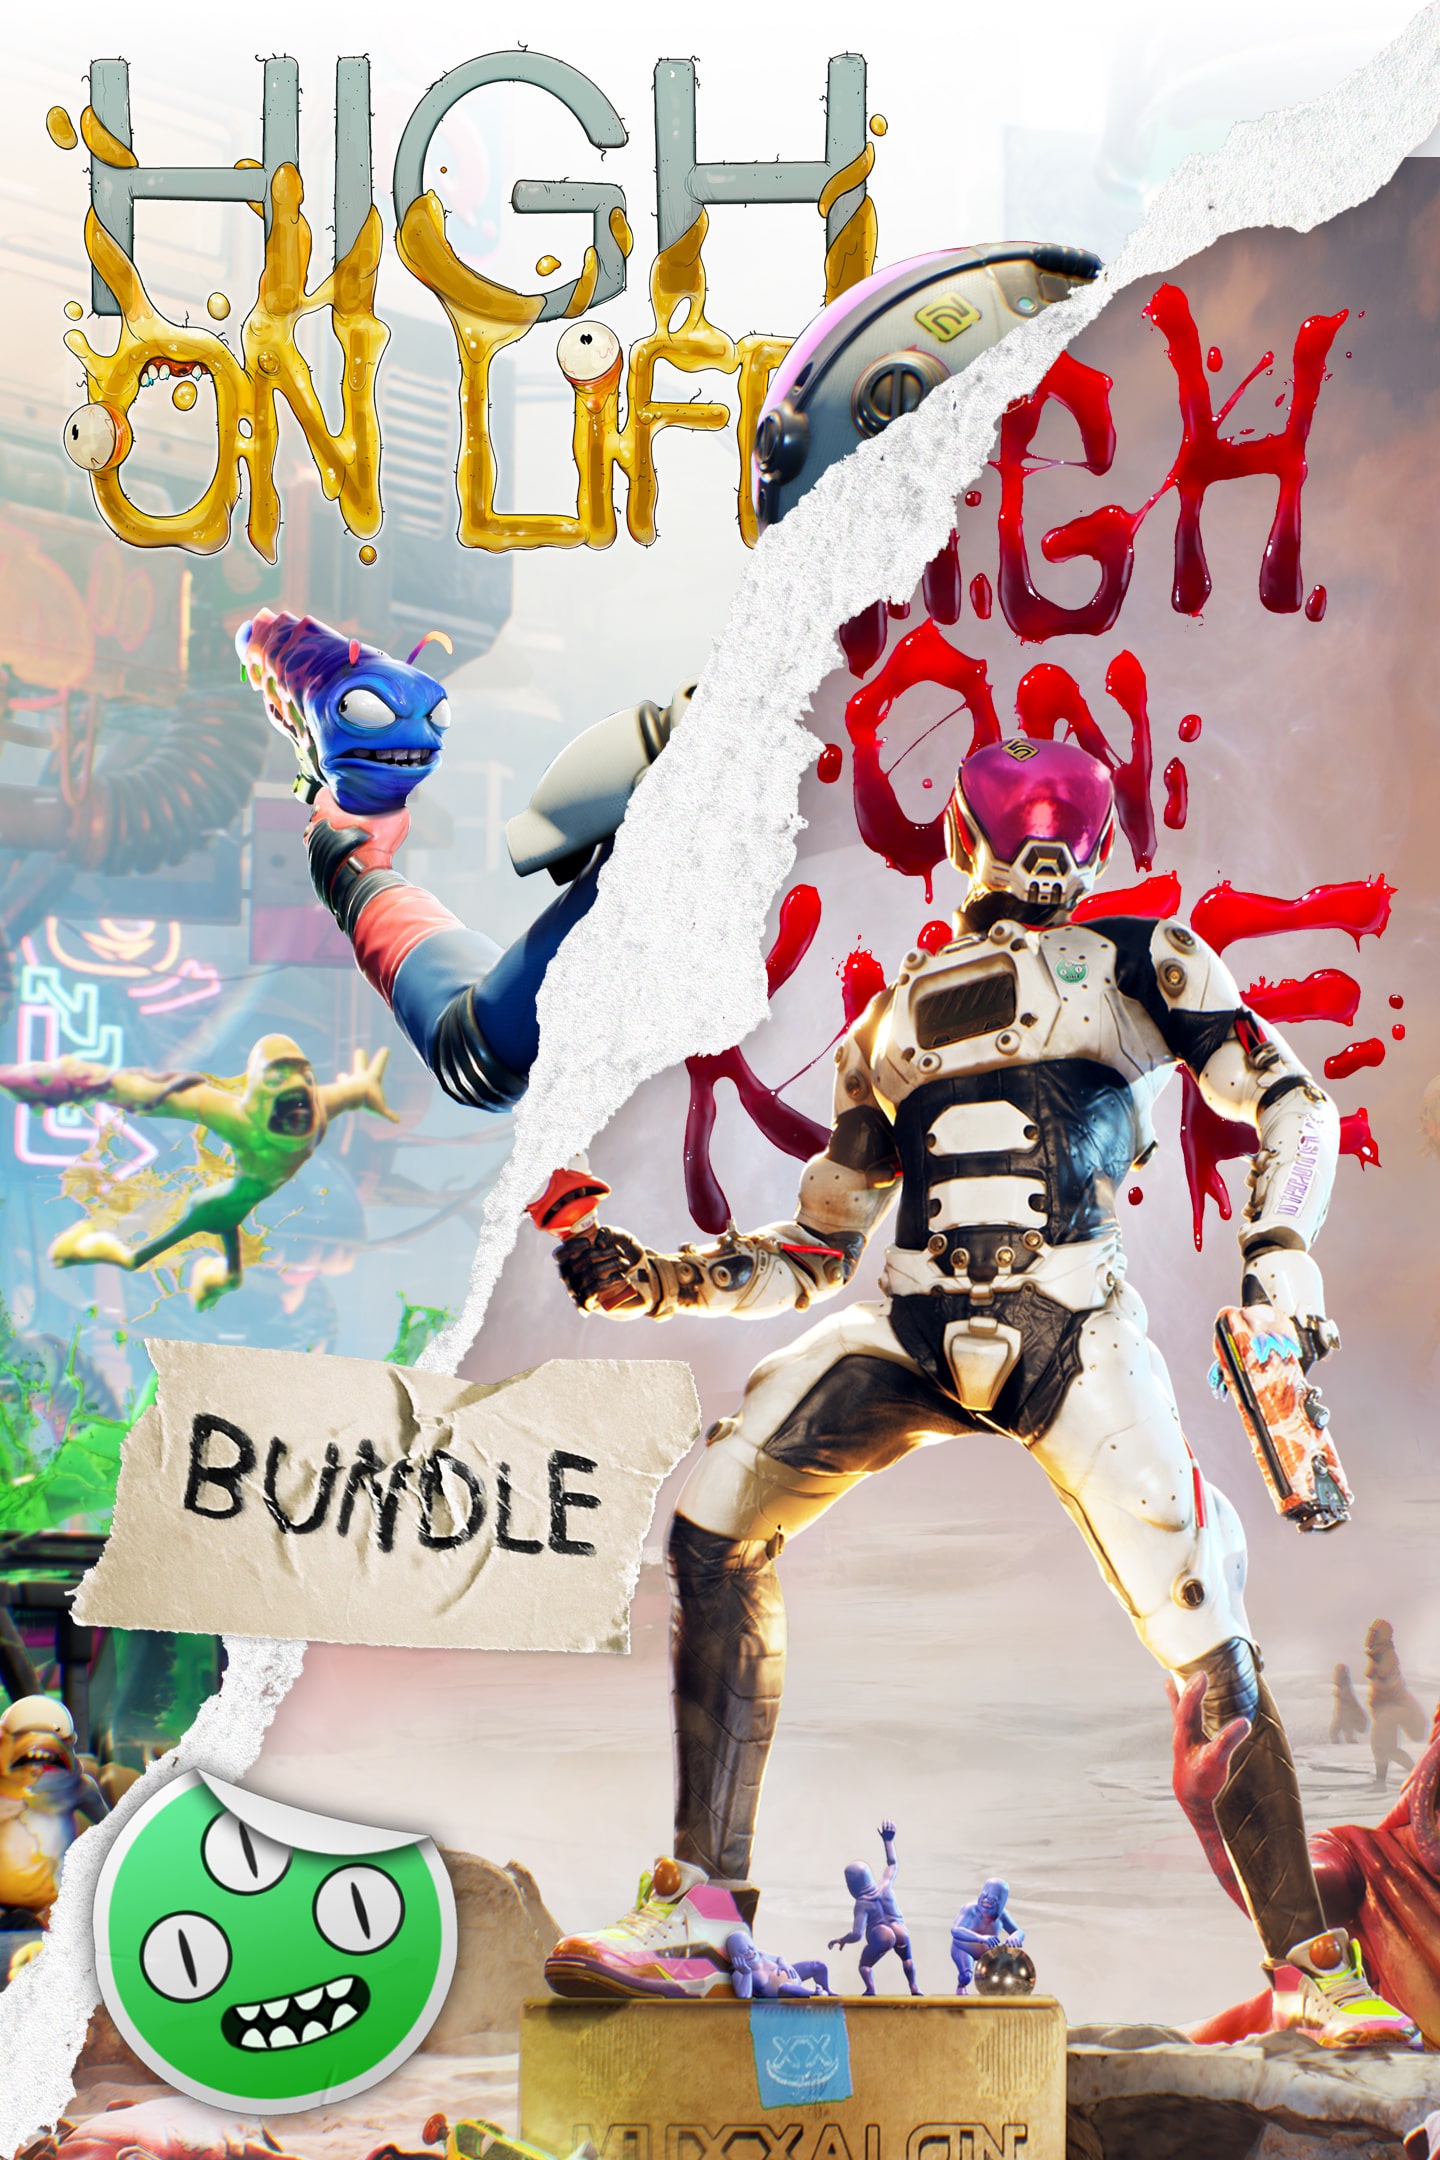 High on Life já está disponível para PS4 e PS5